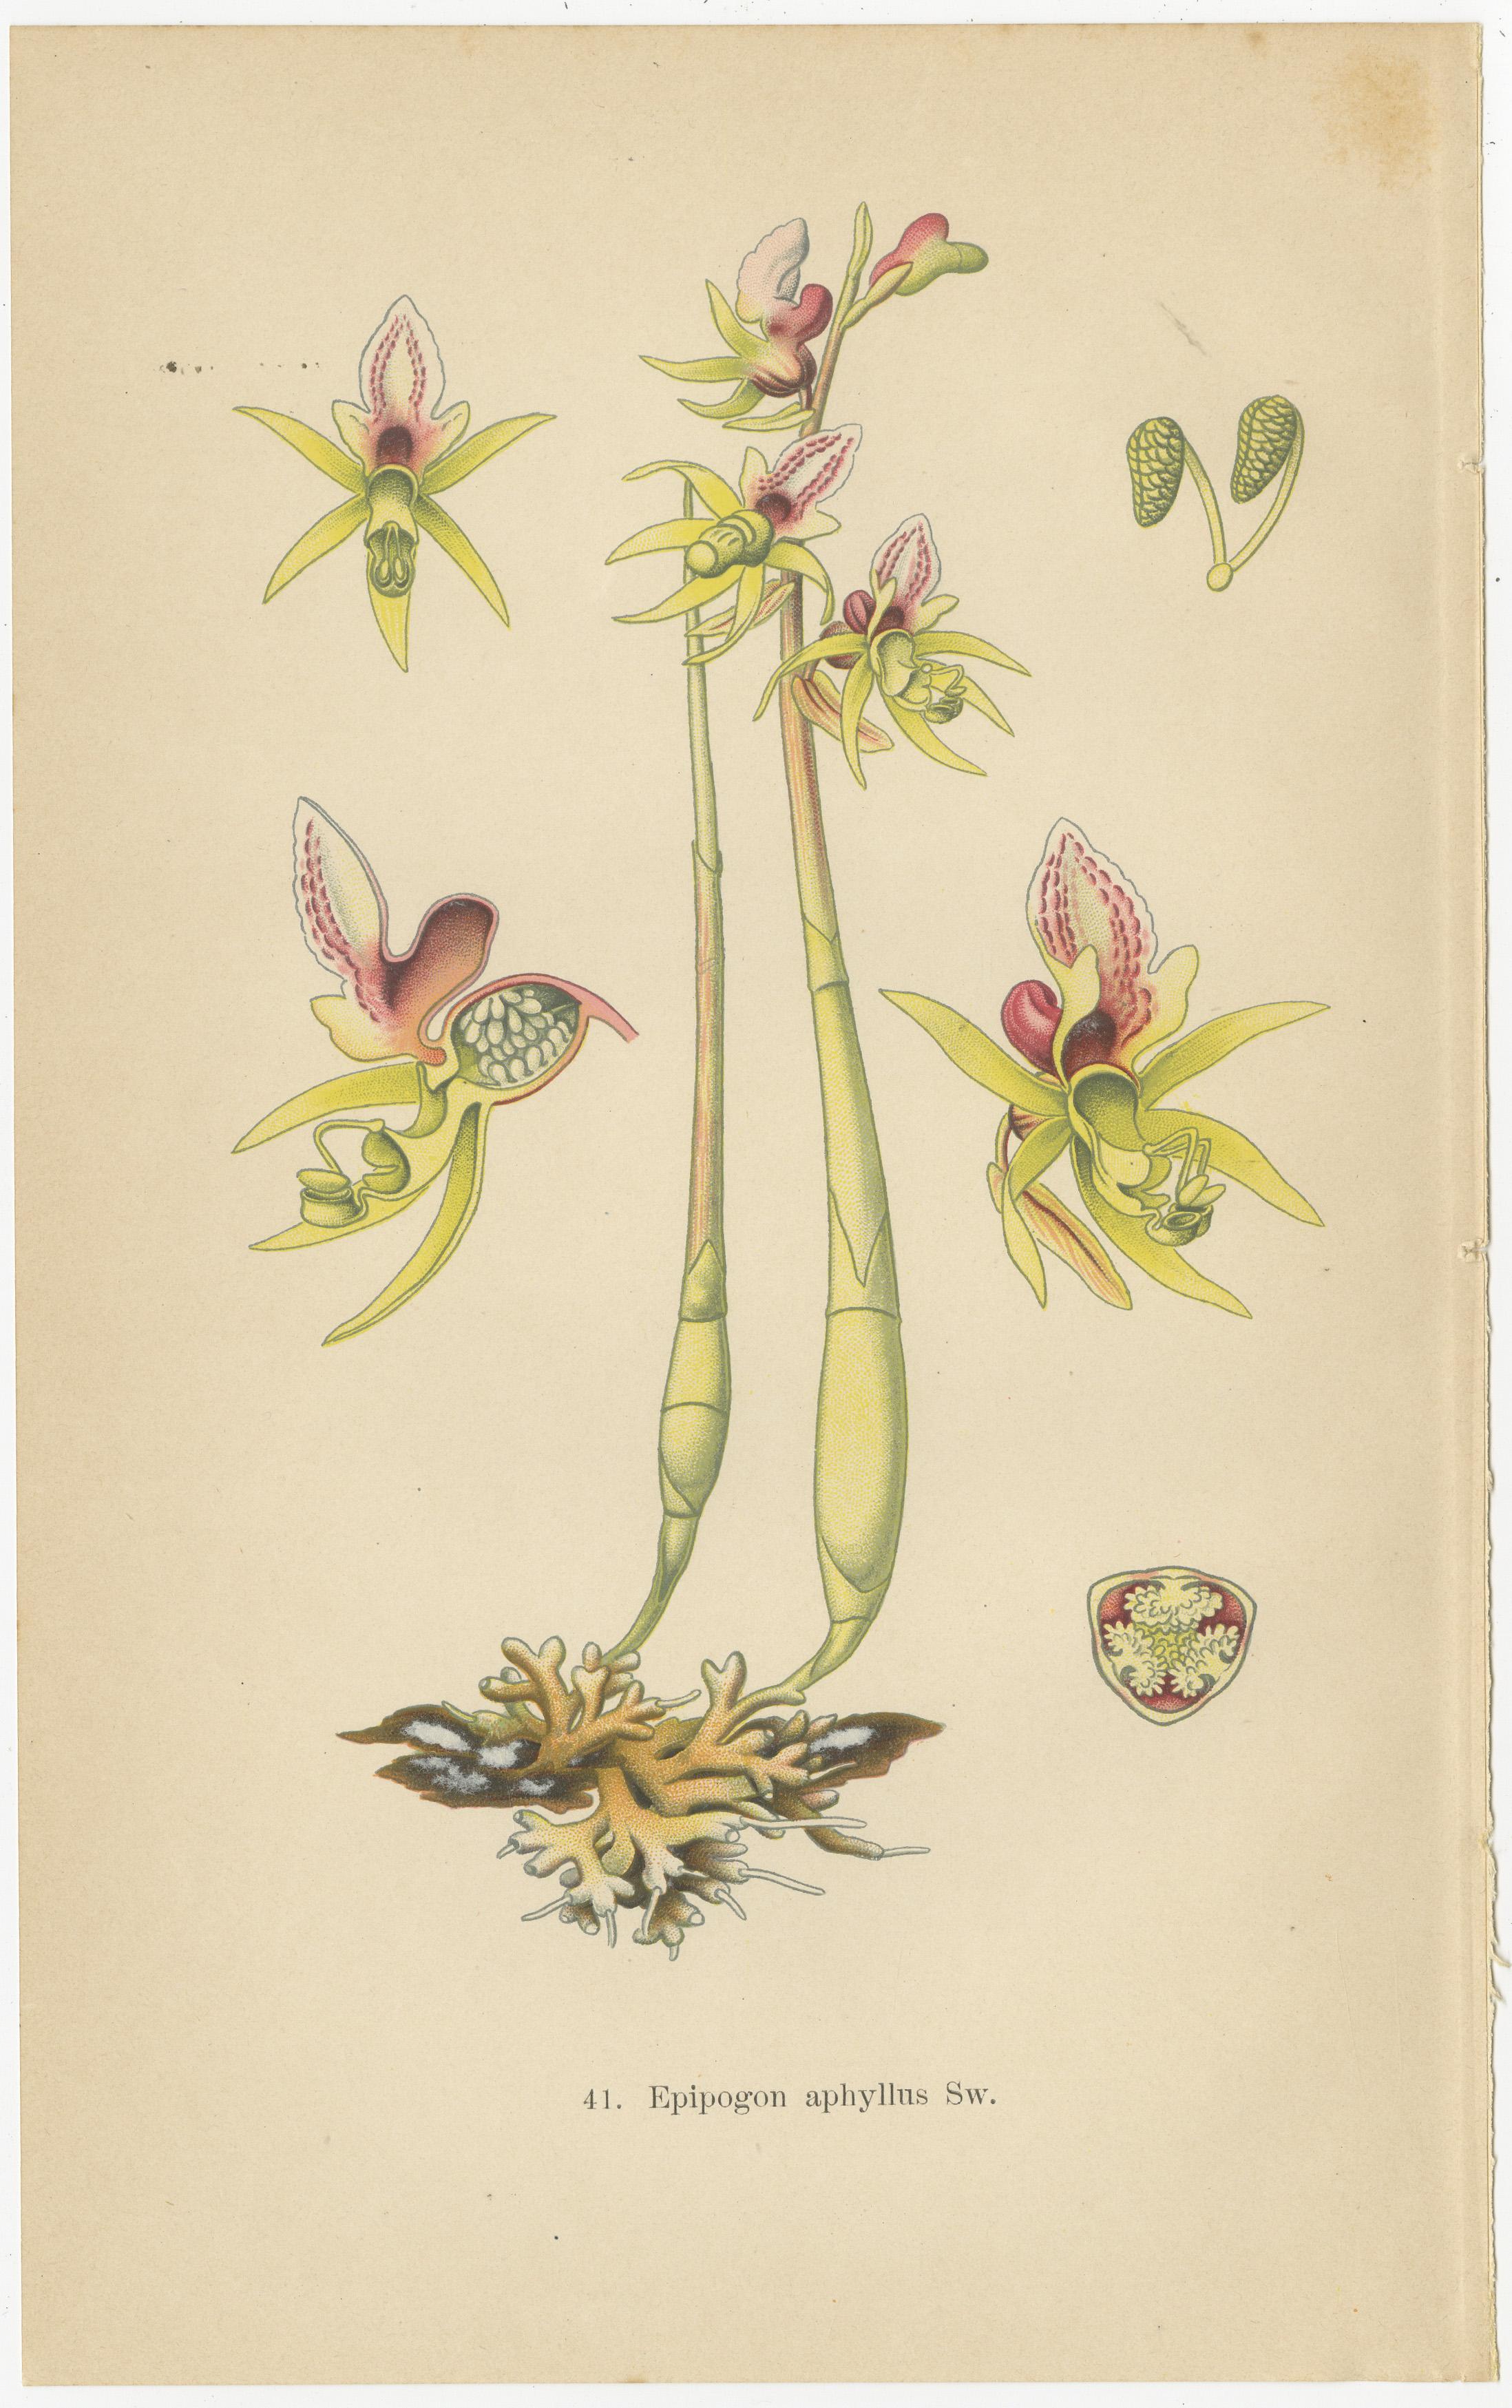 Symphonie florale : Les illustrations botaniques de Müller de 1904

Ce collage comprend trois gravures botaniques tirées du tome de 1904 de Walter Müller, qui a méticuleusement répertorié les principales formes des espèces d'orchidées présentes en